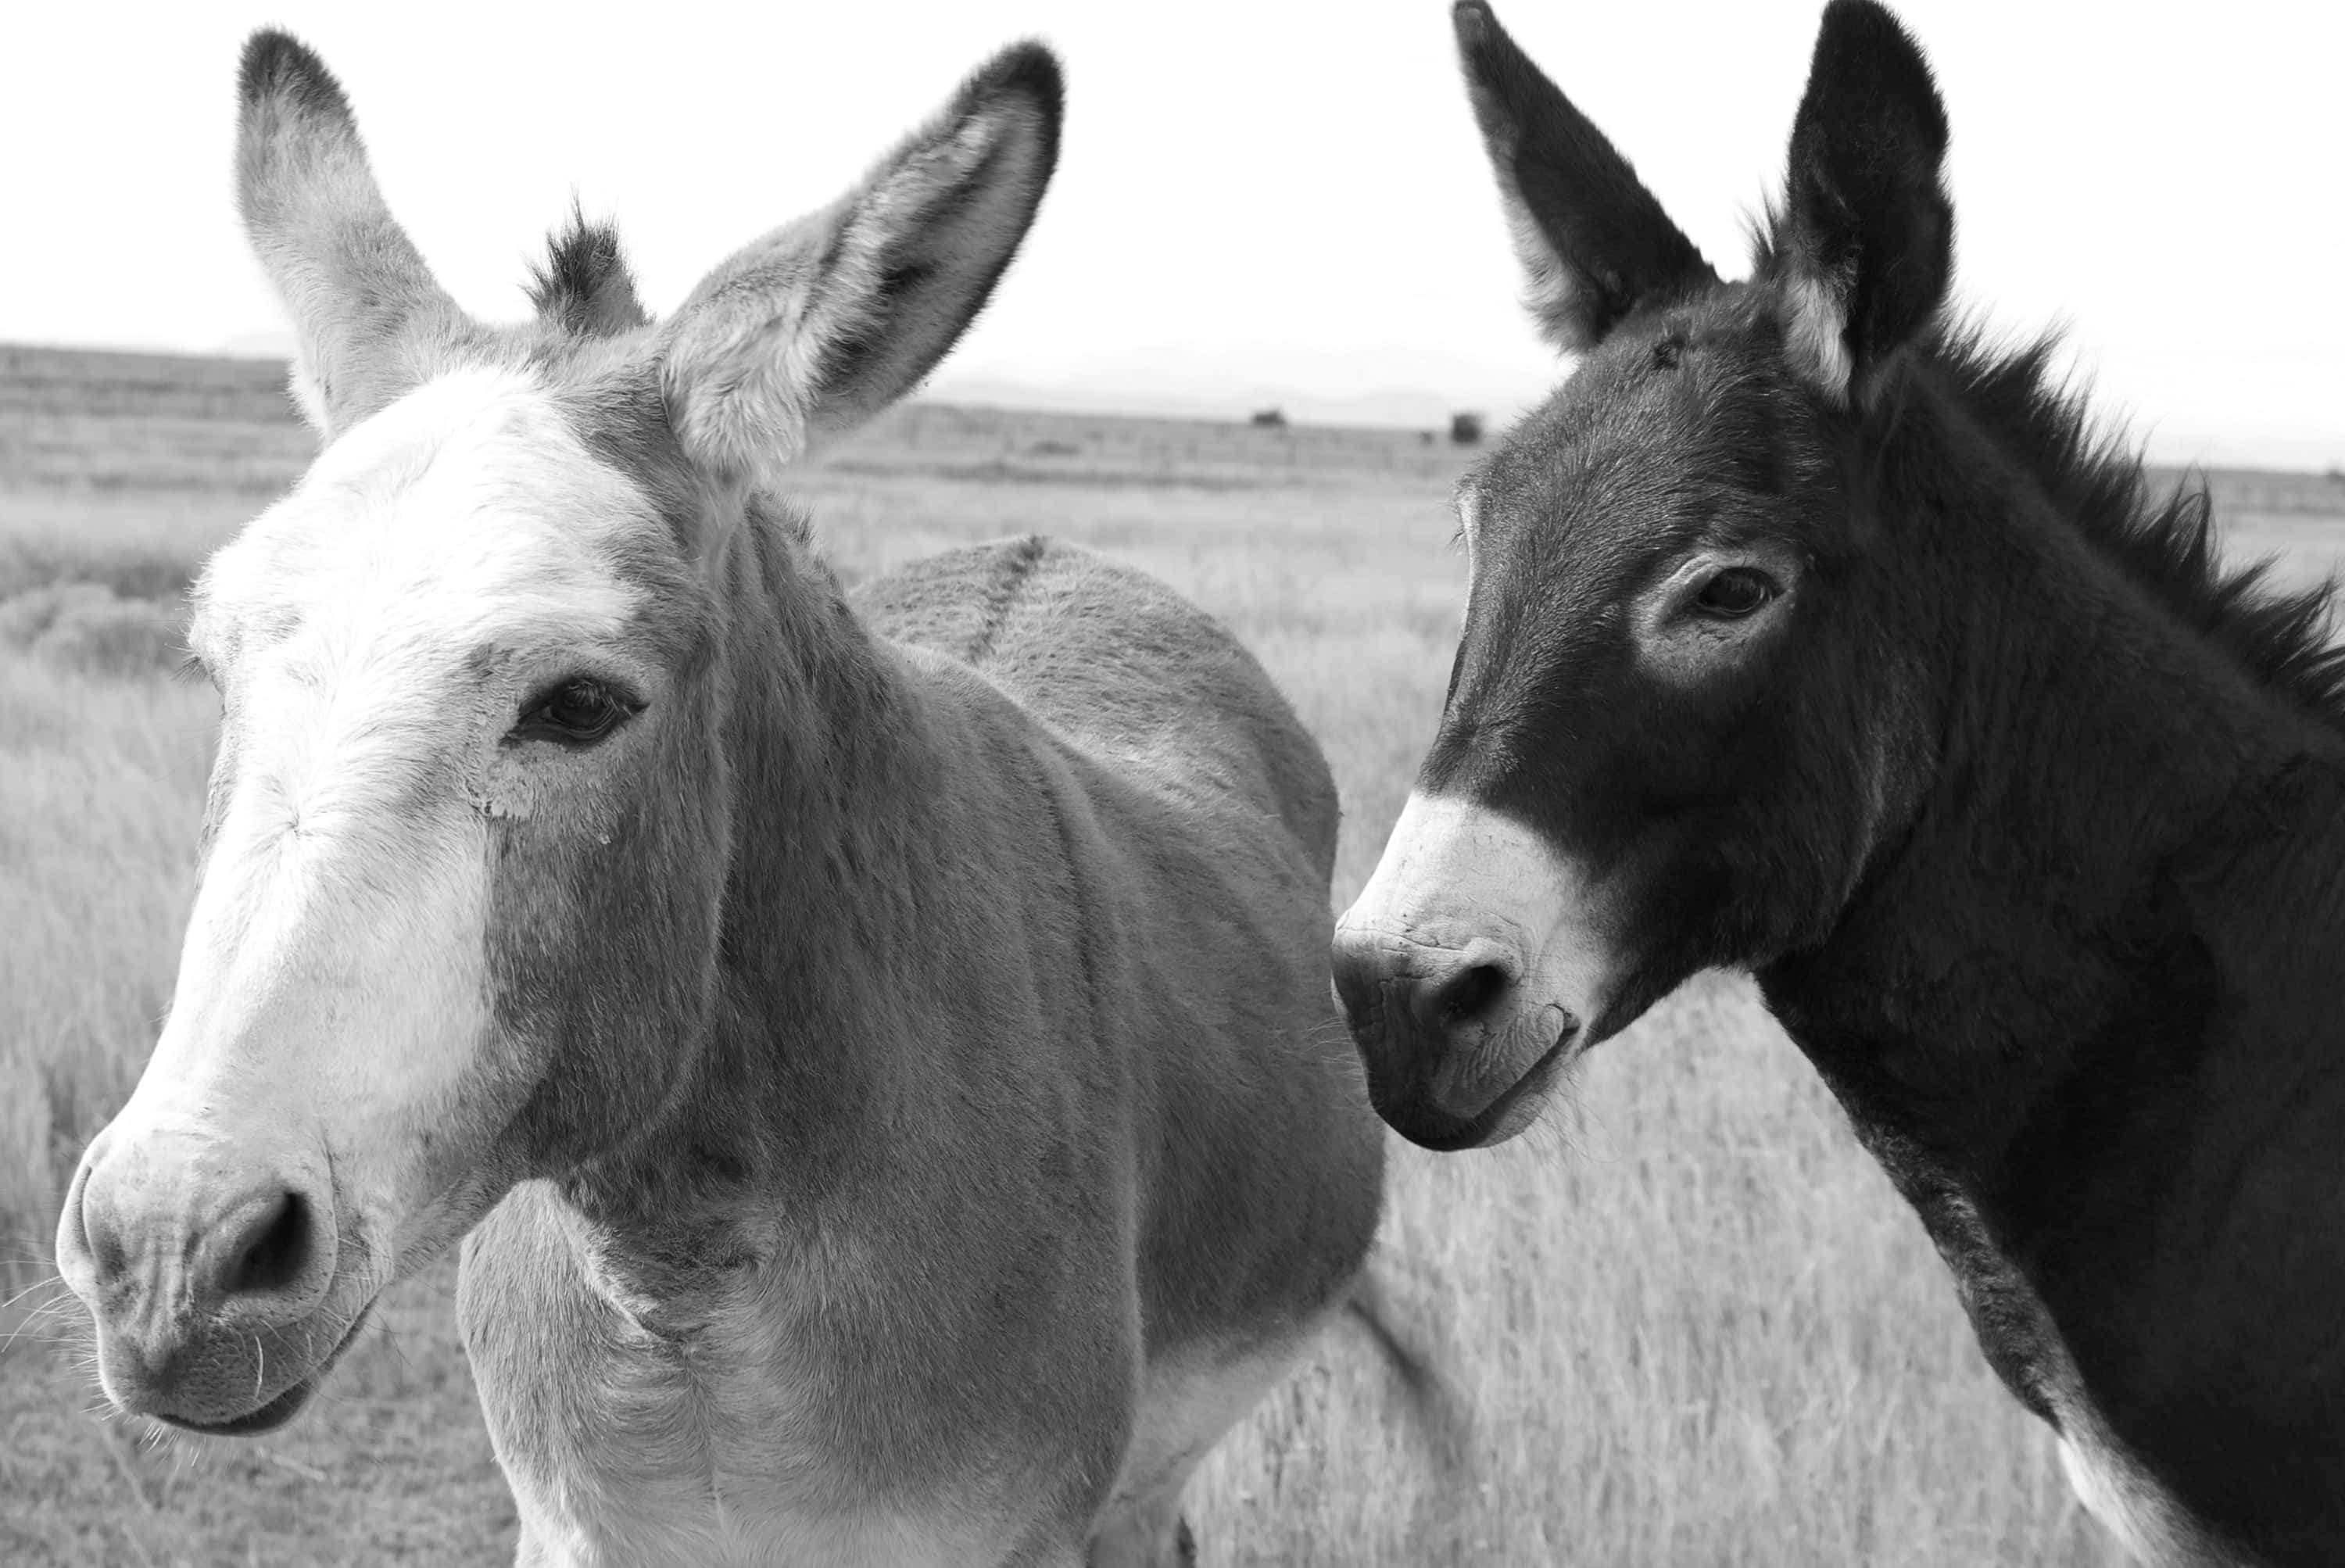 Portrait of two burros (donkeys) in a field outside of Marfa, TX.